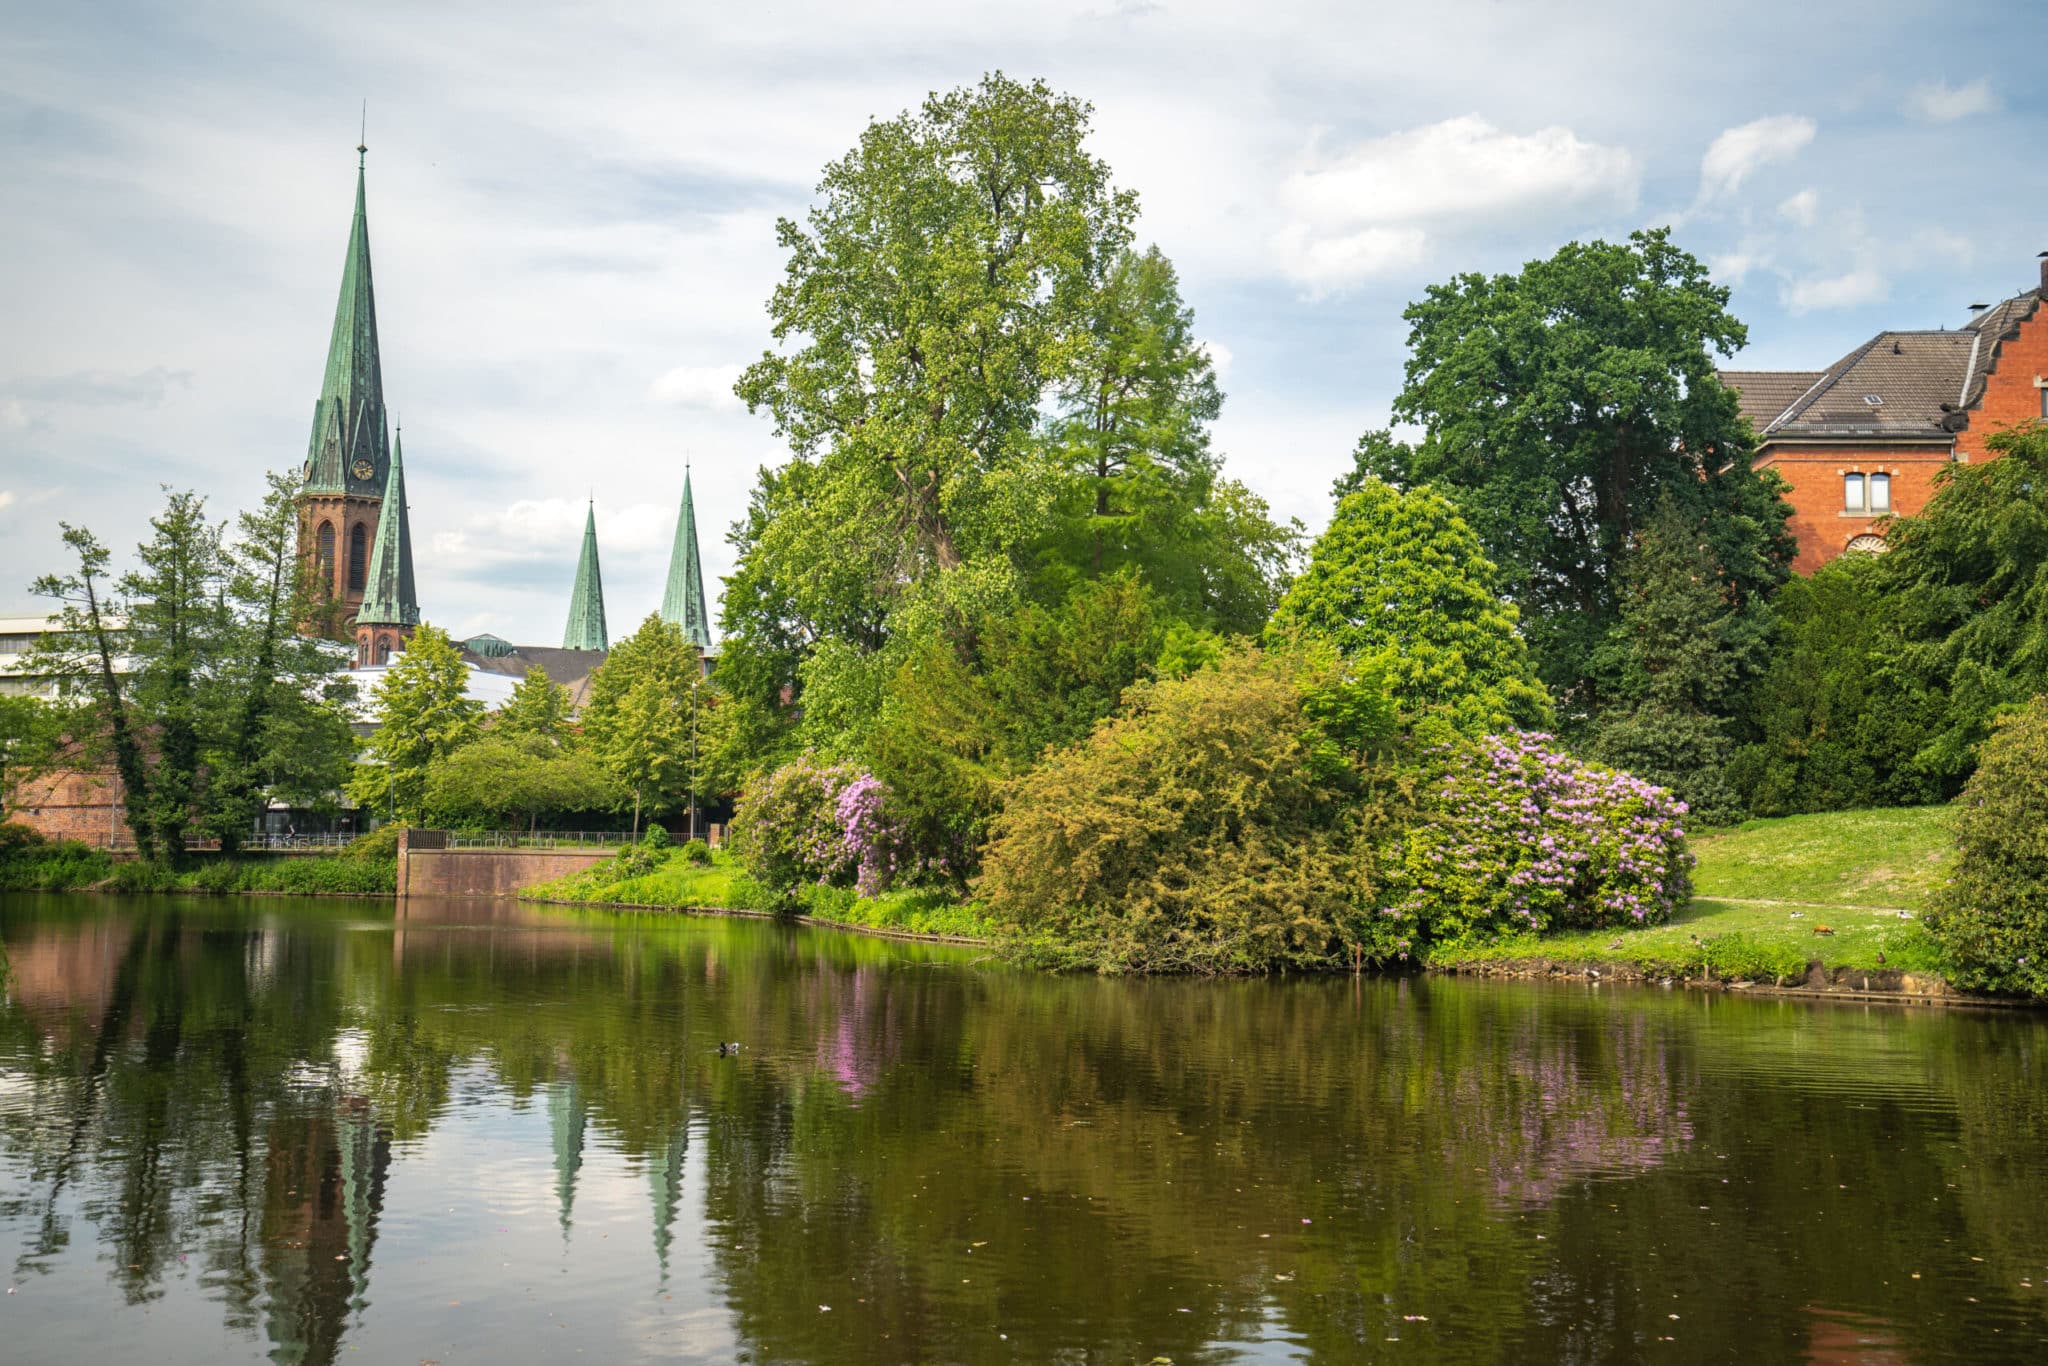 Blick vom Oldenburger Schlossgarten über den See in Richtung Innenstadt mit Blick auf die Türme der St. Lamberti-Kirche und das Elisabeth-Anna-Palais (heutiges Sozialgericht).